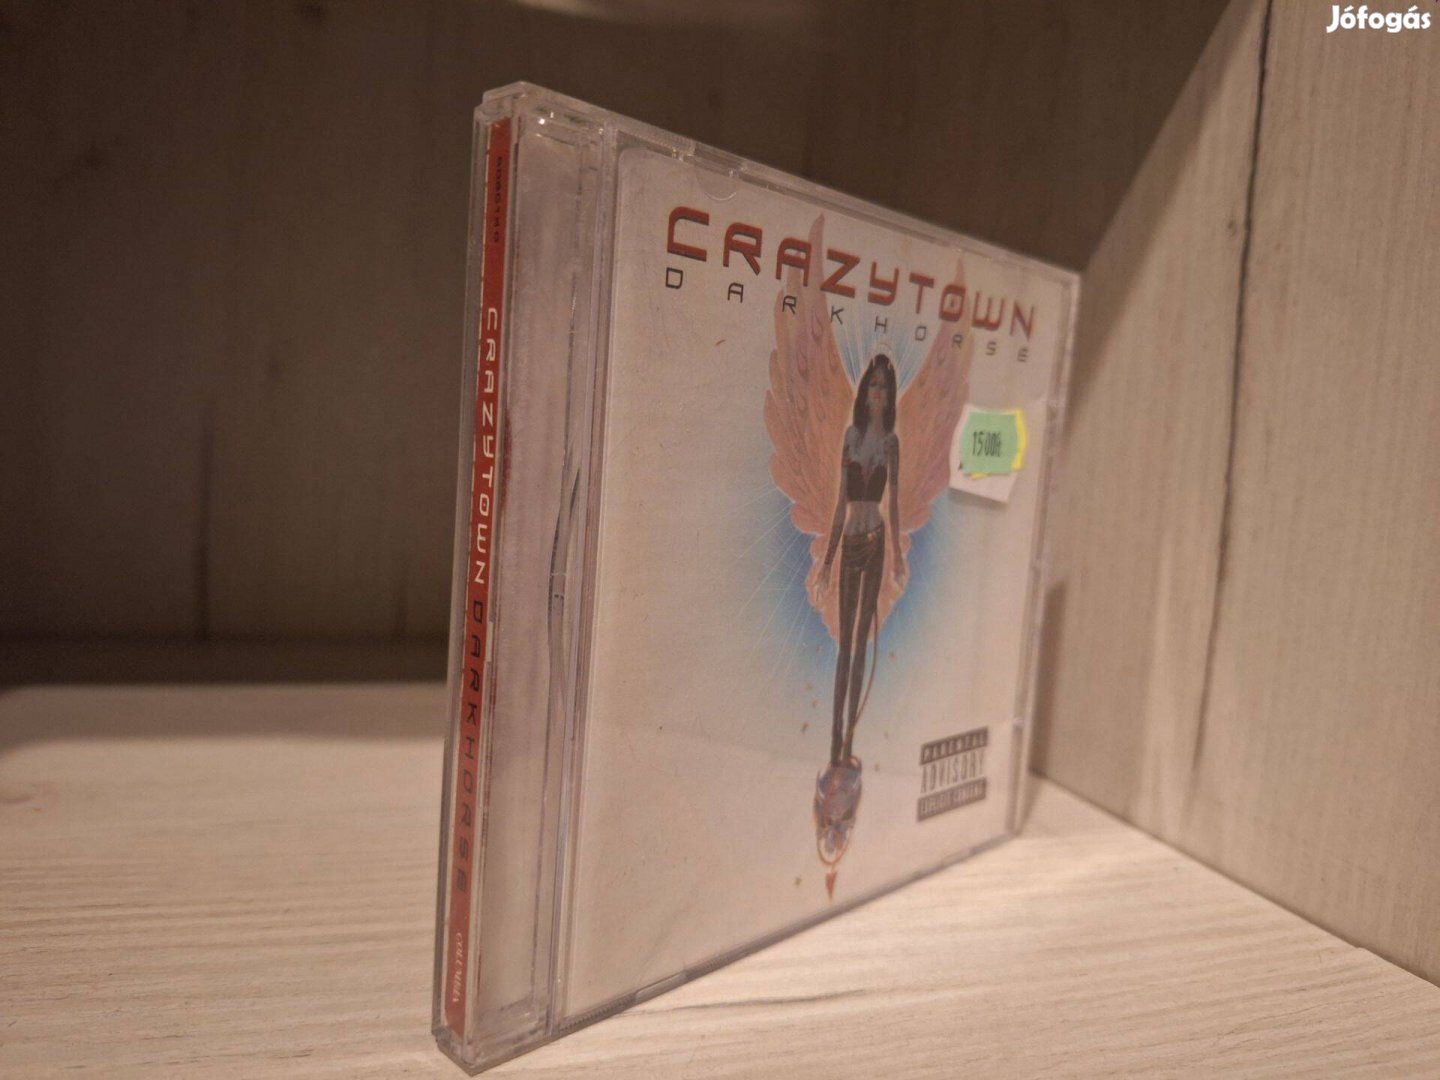 Crazy Town - Darkhorse CD